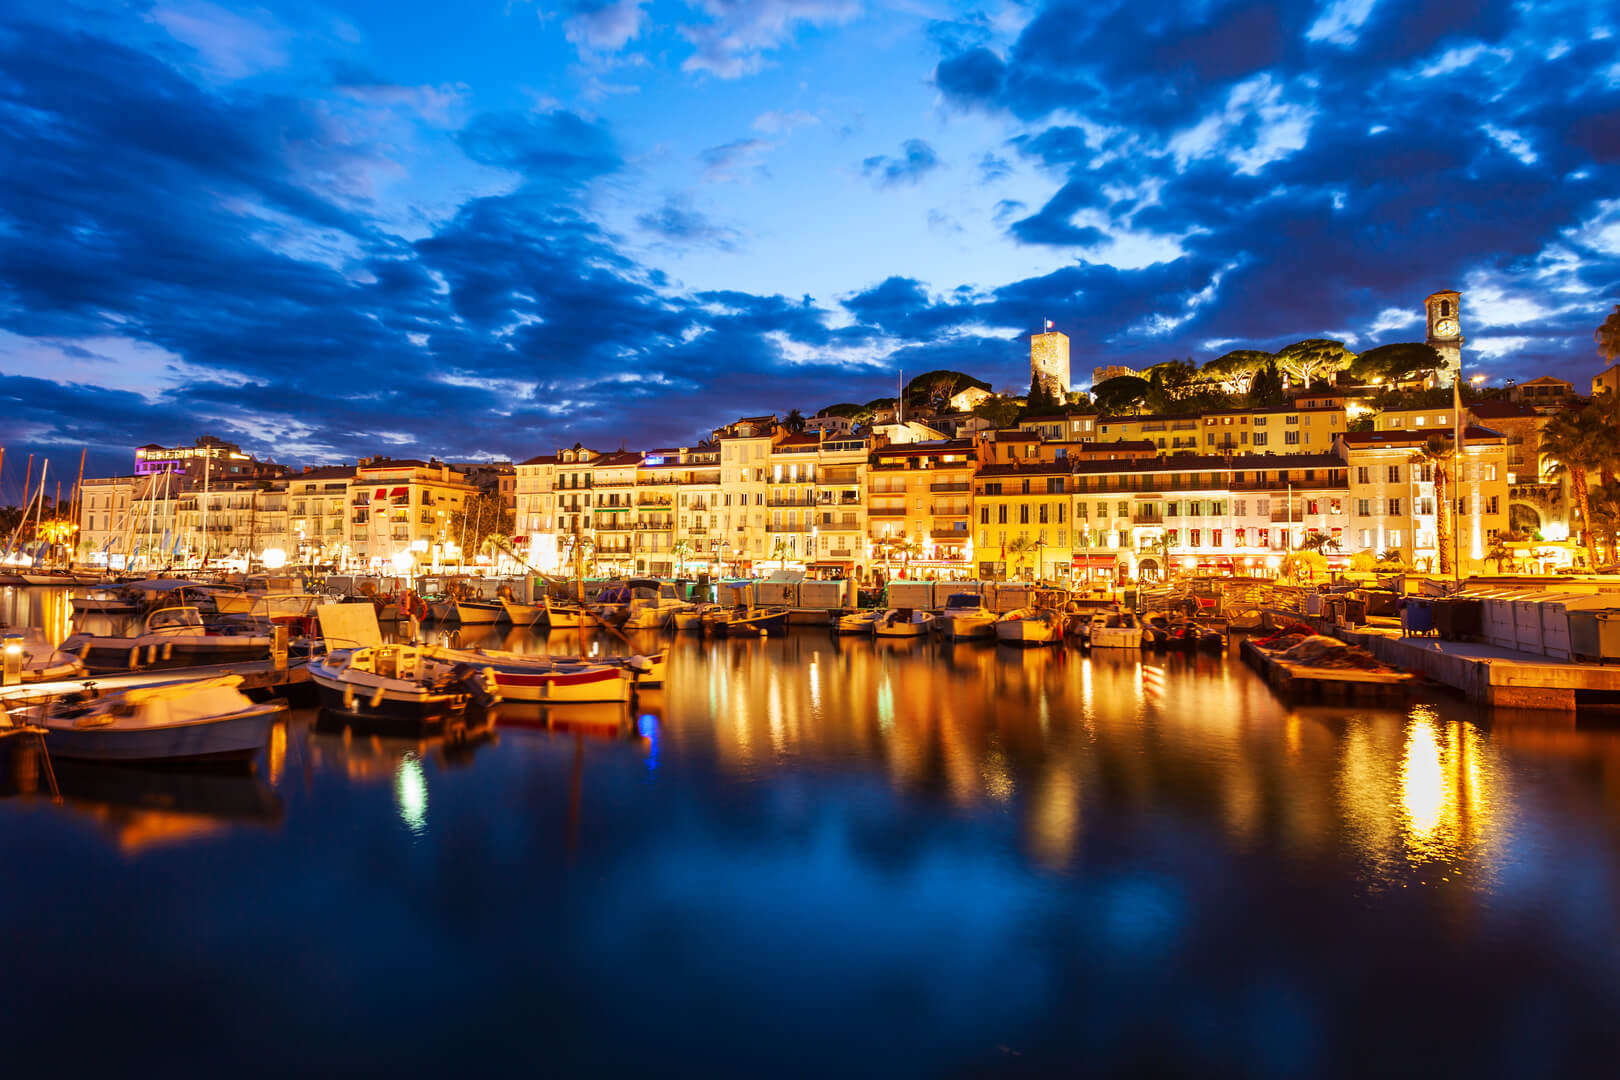 Vue aérienne panoramique du port de Cannes la nuit. Cannes est une ville située sur la Côte d'Azur, dans le sud de la France.